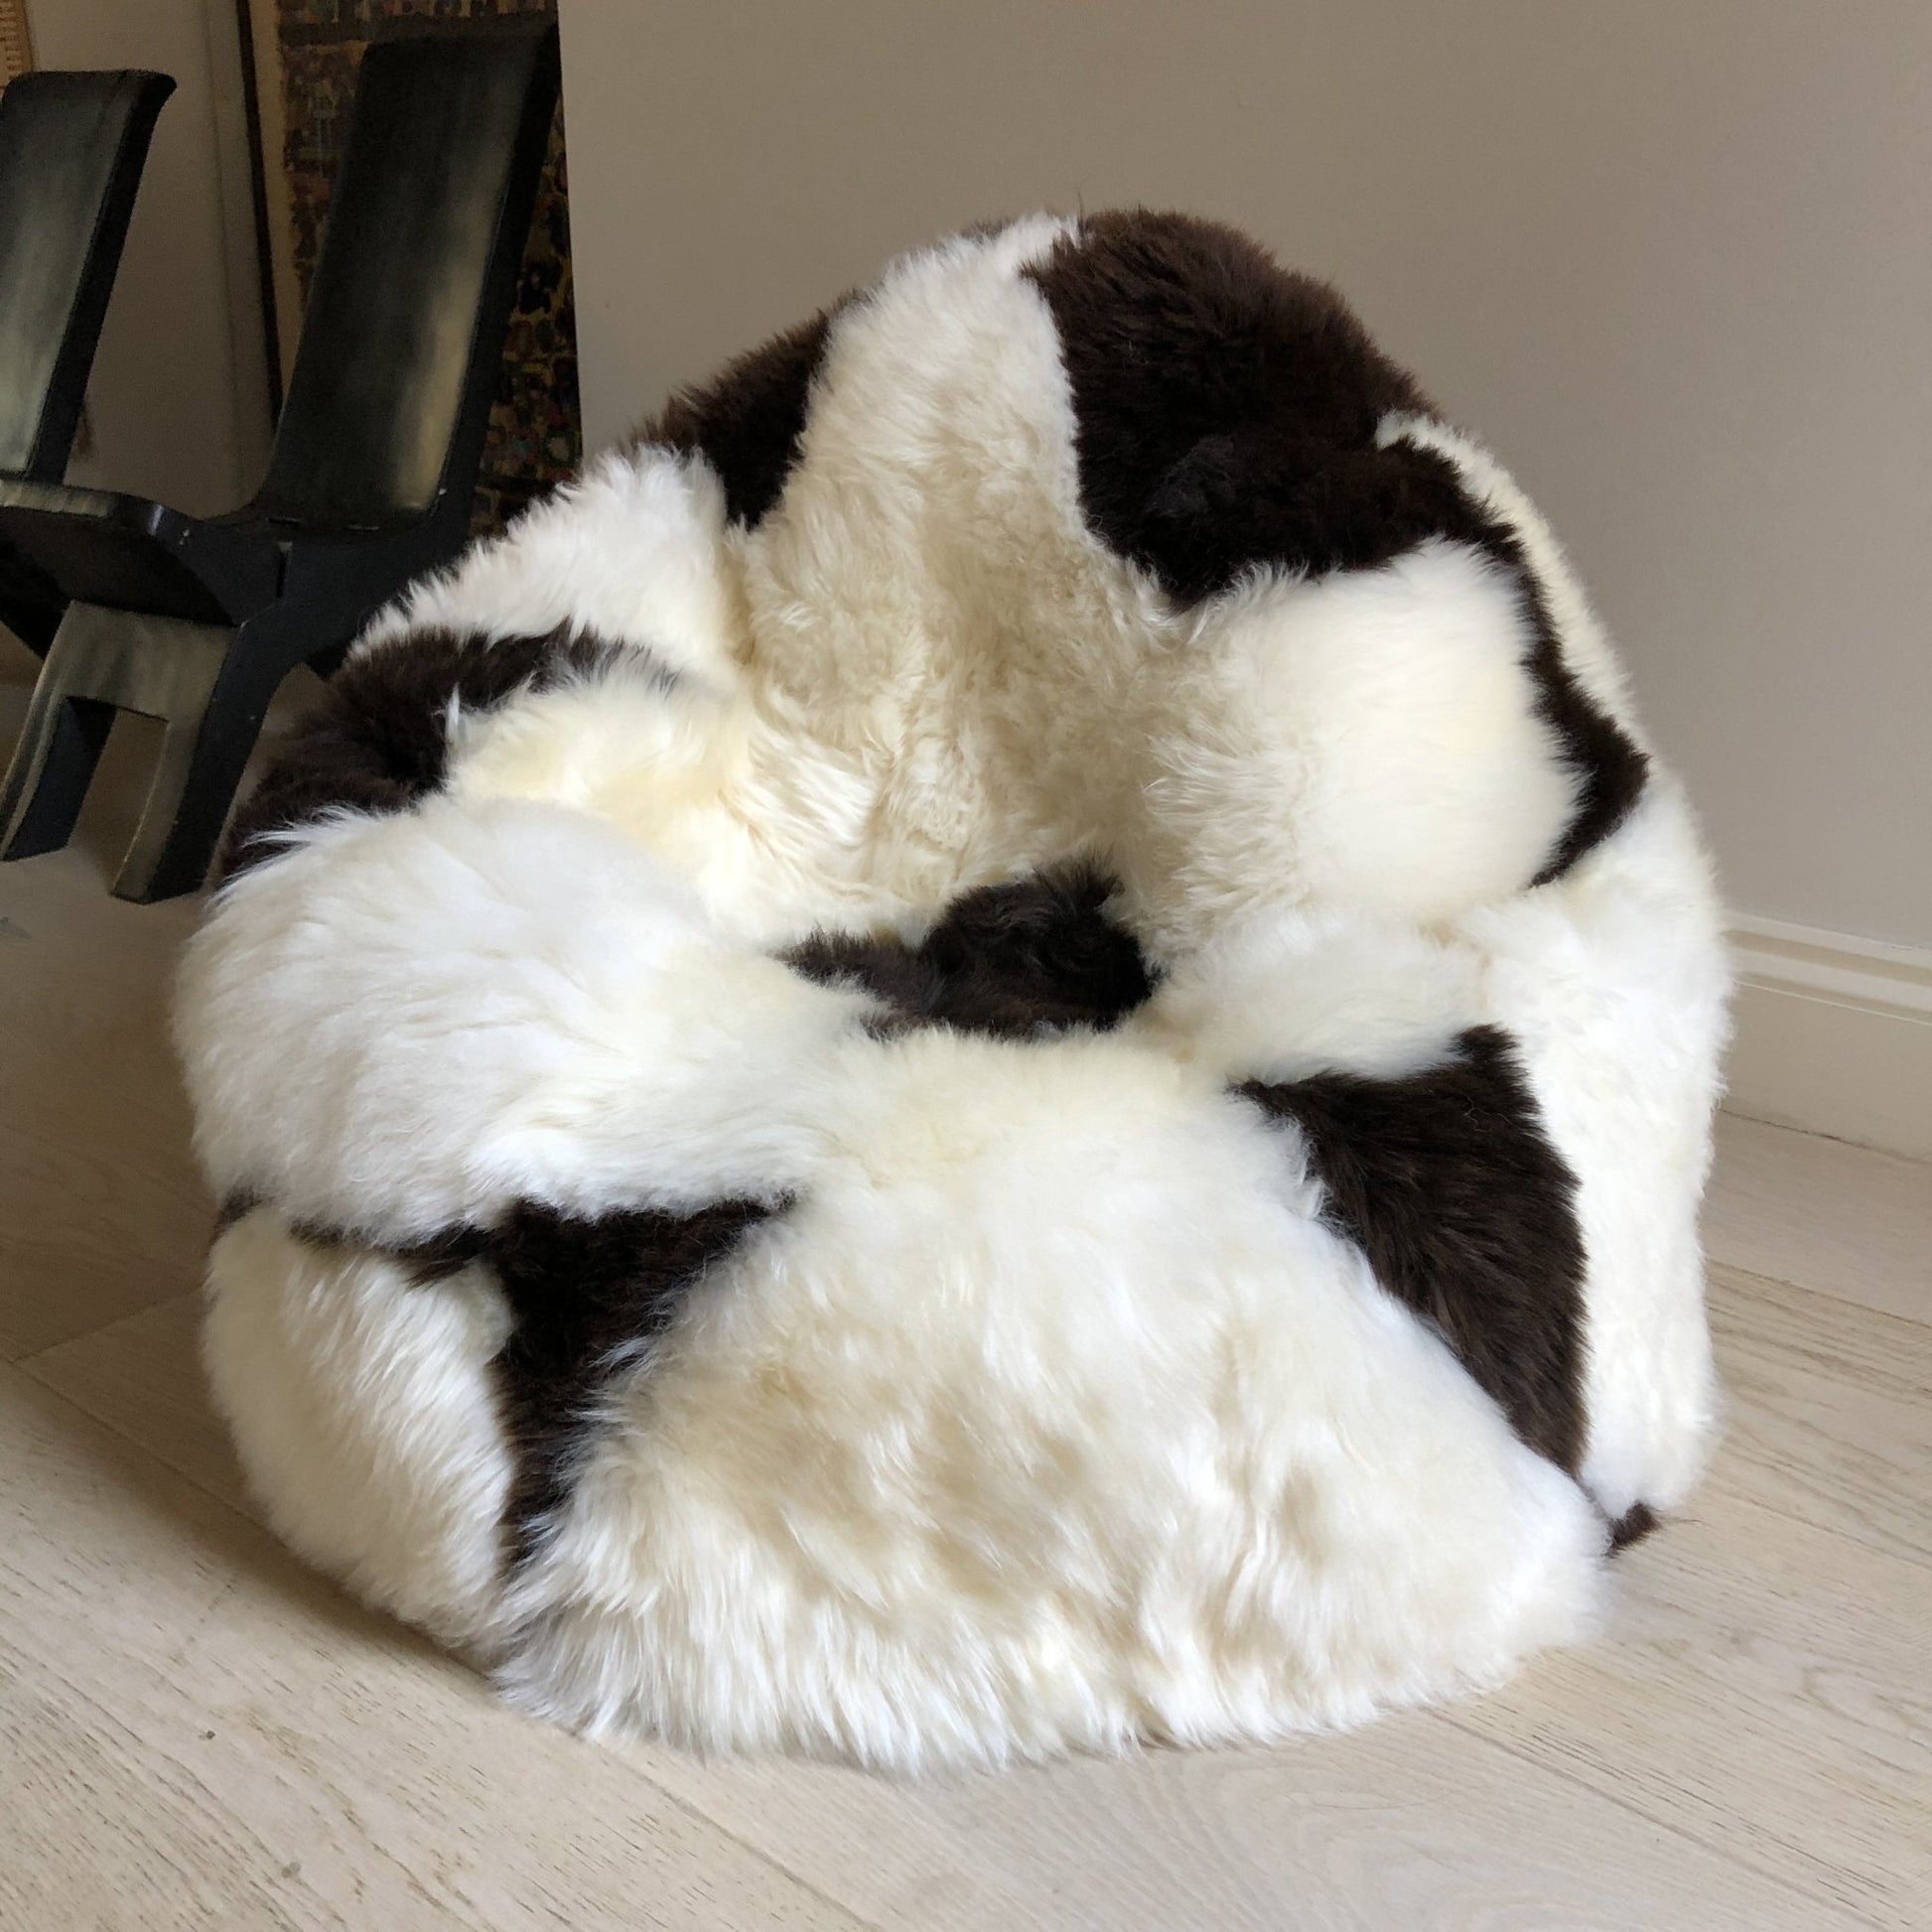 Sheepskin Beanbag Chair 100% Natural British White & Brown Spotted Bean Bag - Wildash London